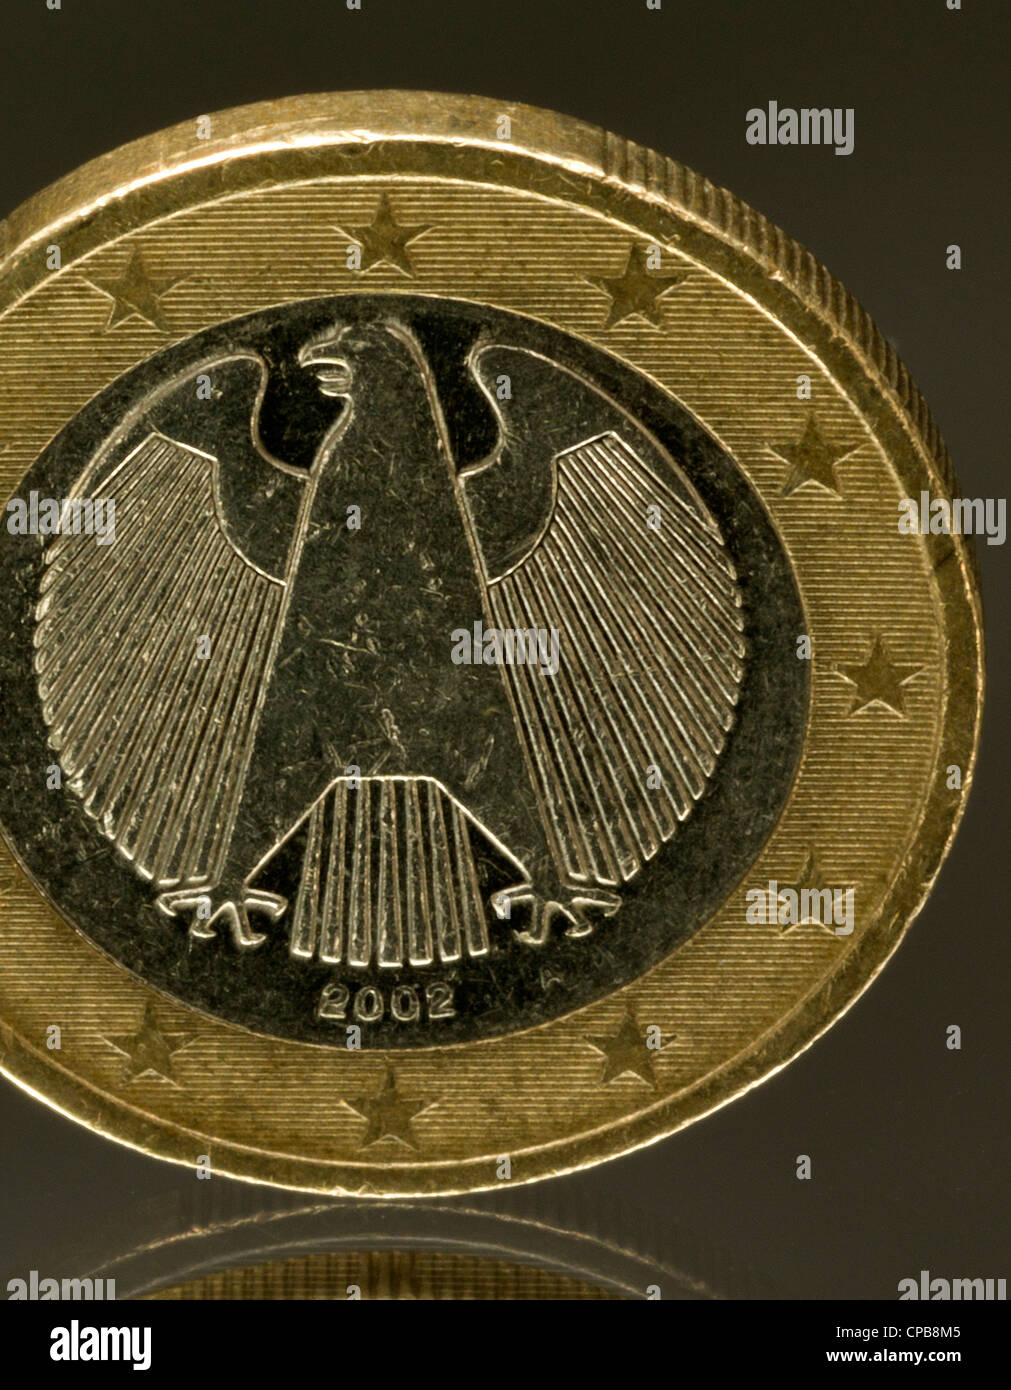 Deutschland Germany german coin deutscher Euro Stock Photo